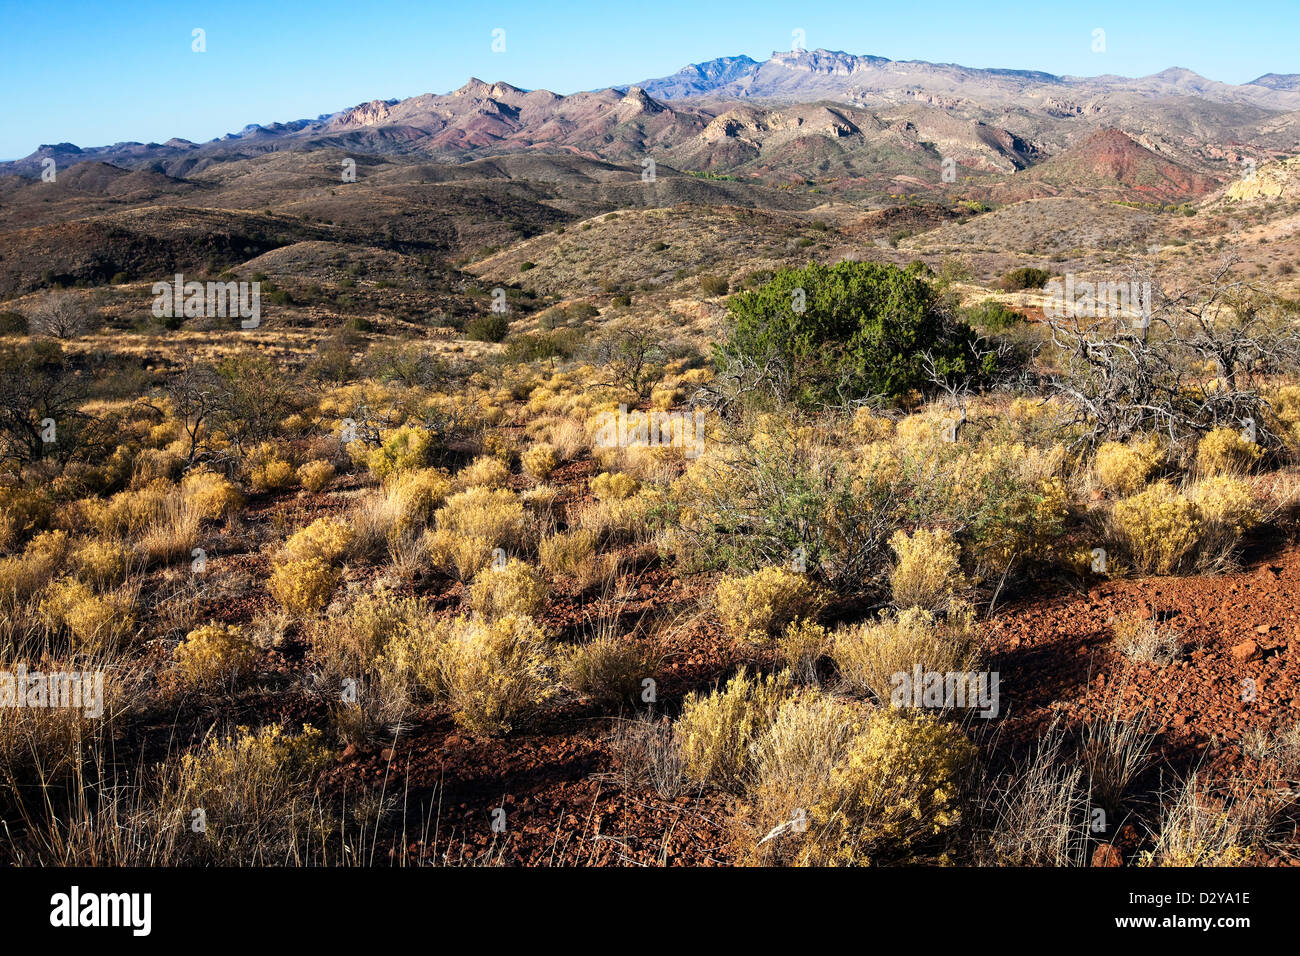 Galiuro Mountains, Arizona Stock Photo